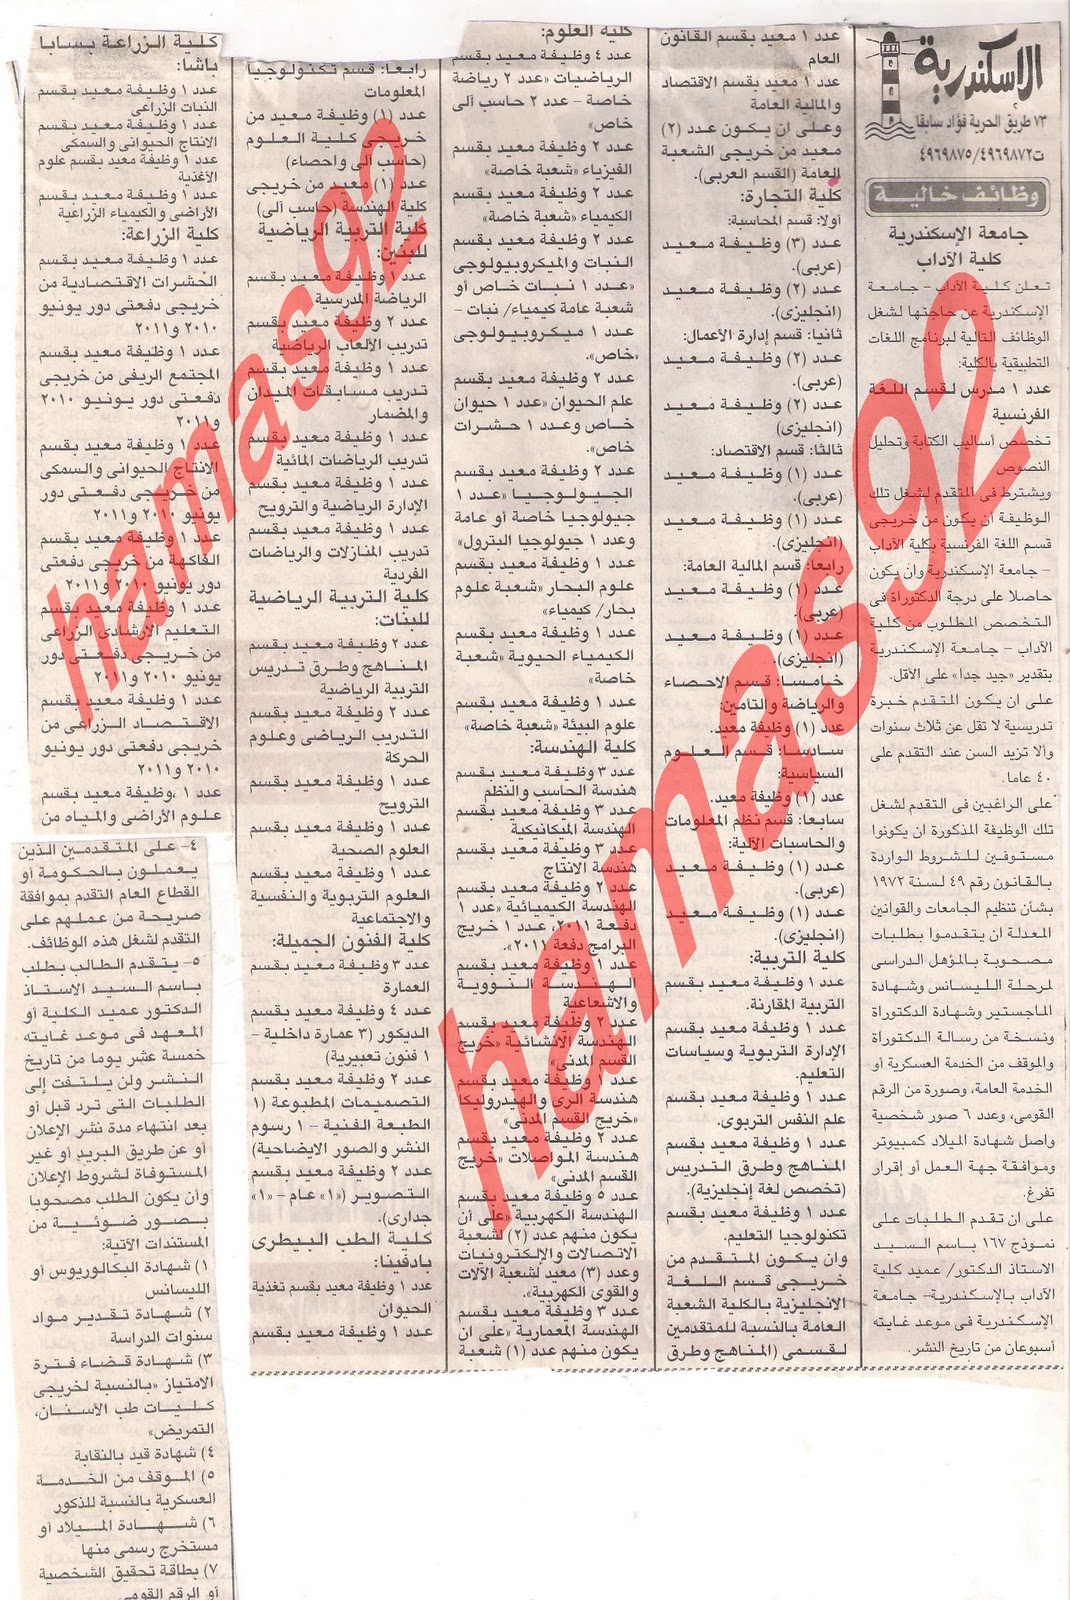 اعلانات وظائف جريدة الجمهورية اليوم الاحد 8 يناير 2012  Picture+005